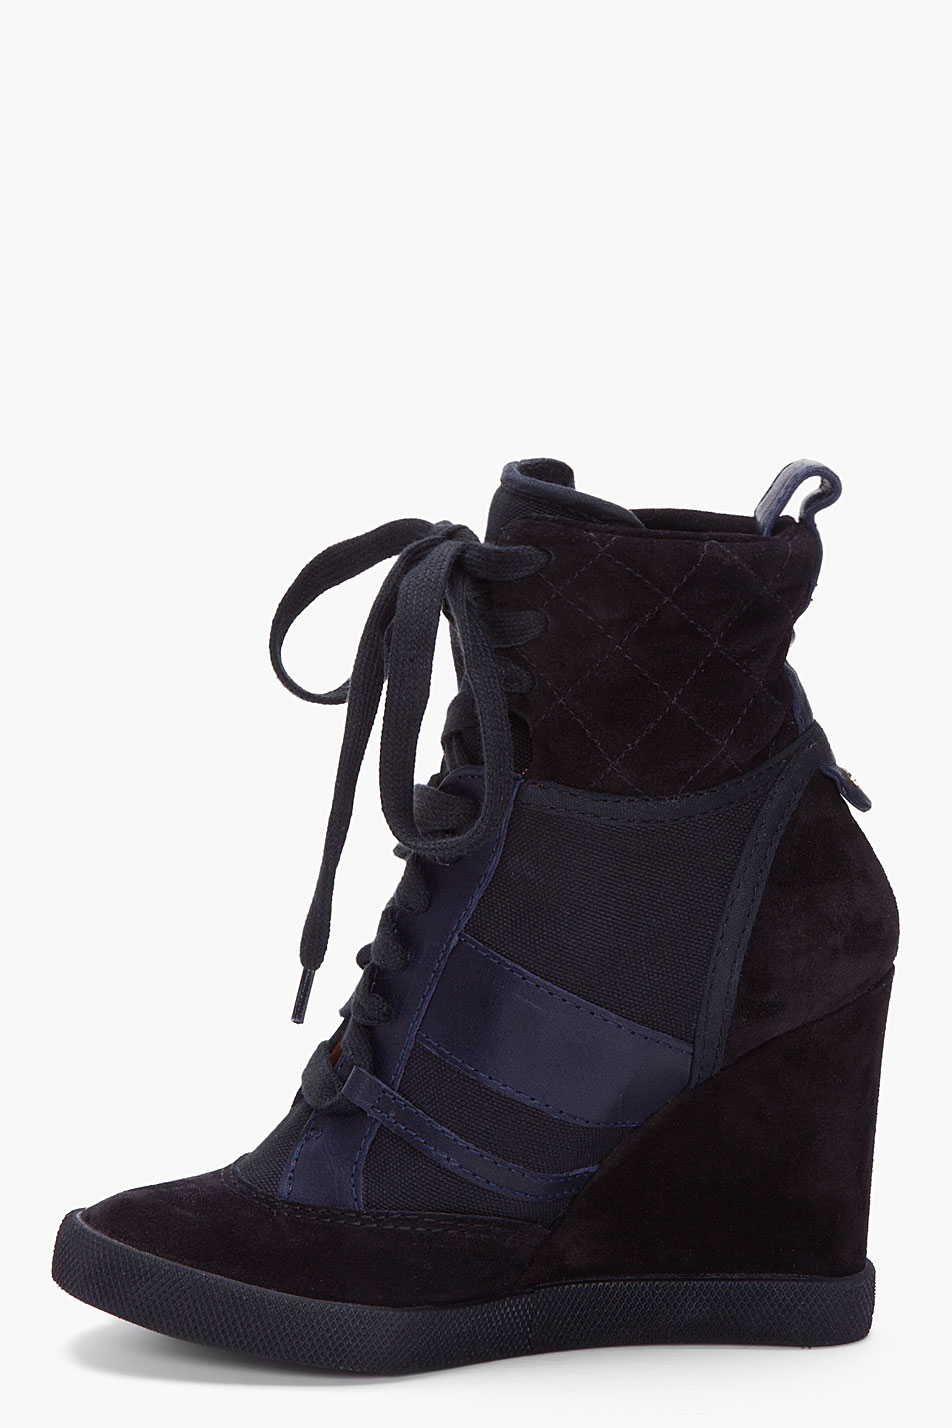 Lyst - Chloé Black Wedge Sneakers in Black